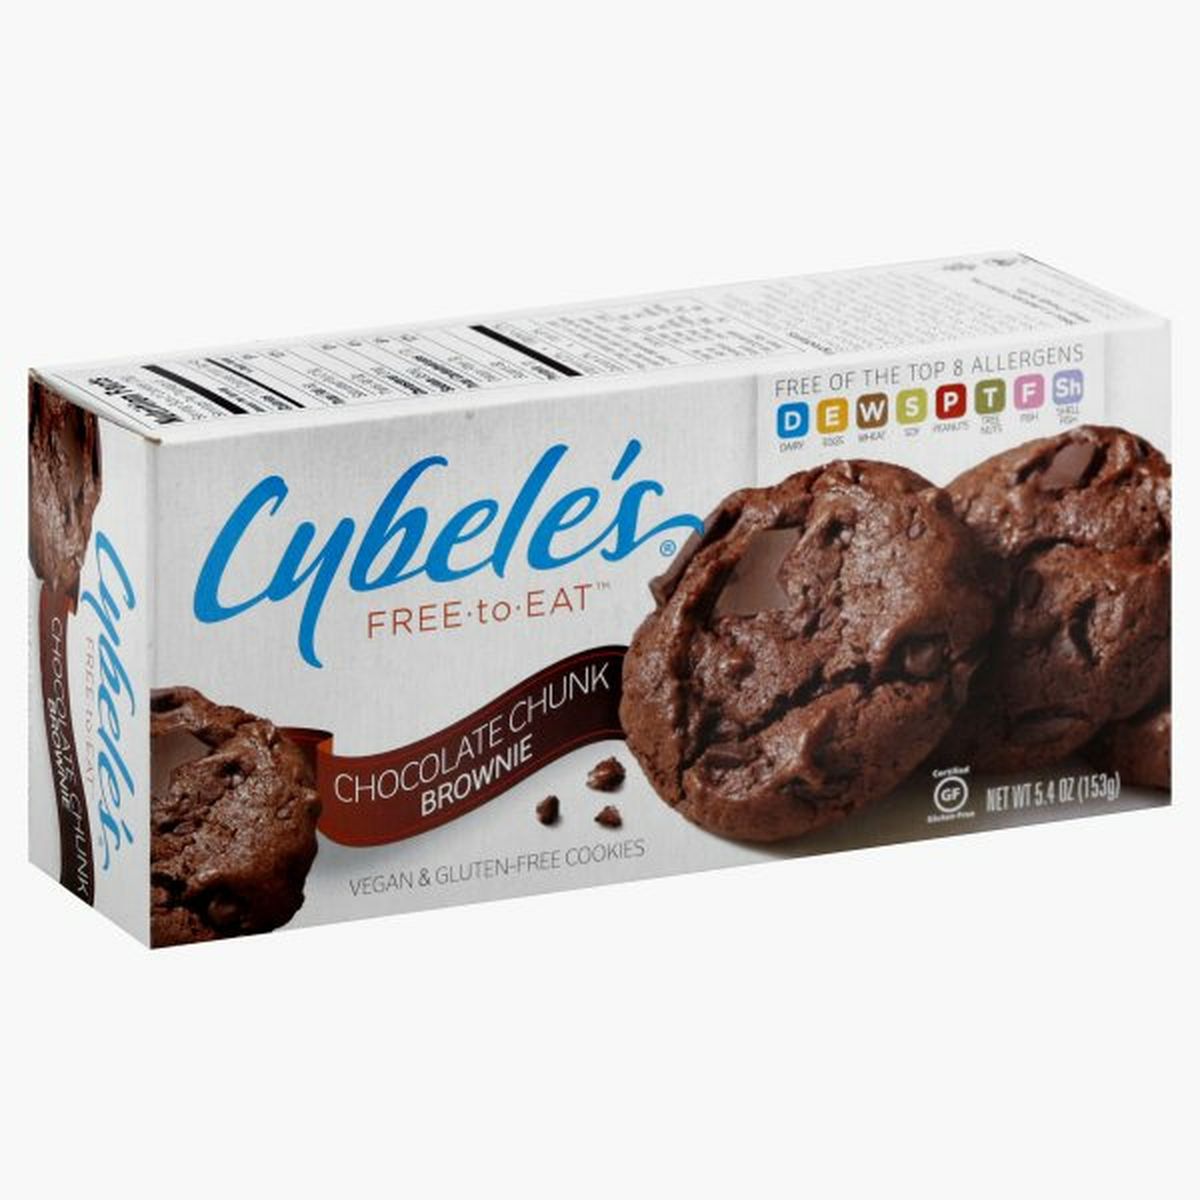 Calories in Cybele's Cookies, Vegan & Gluten Free, Chocolate Chunk Brownie